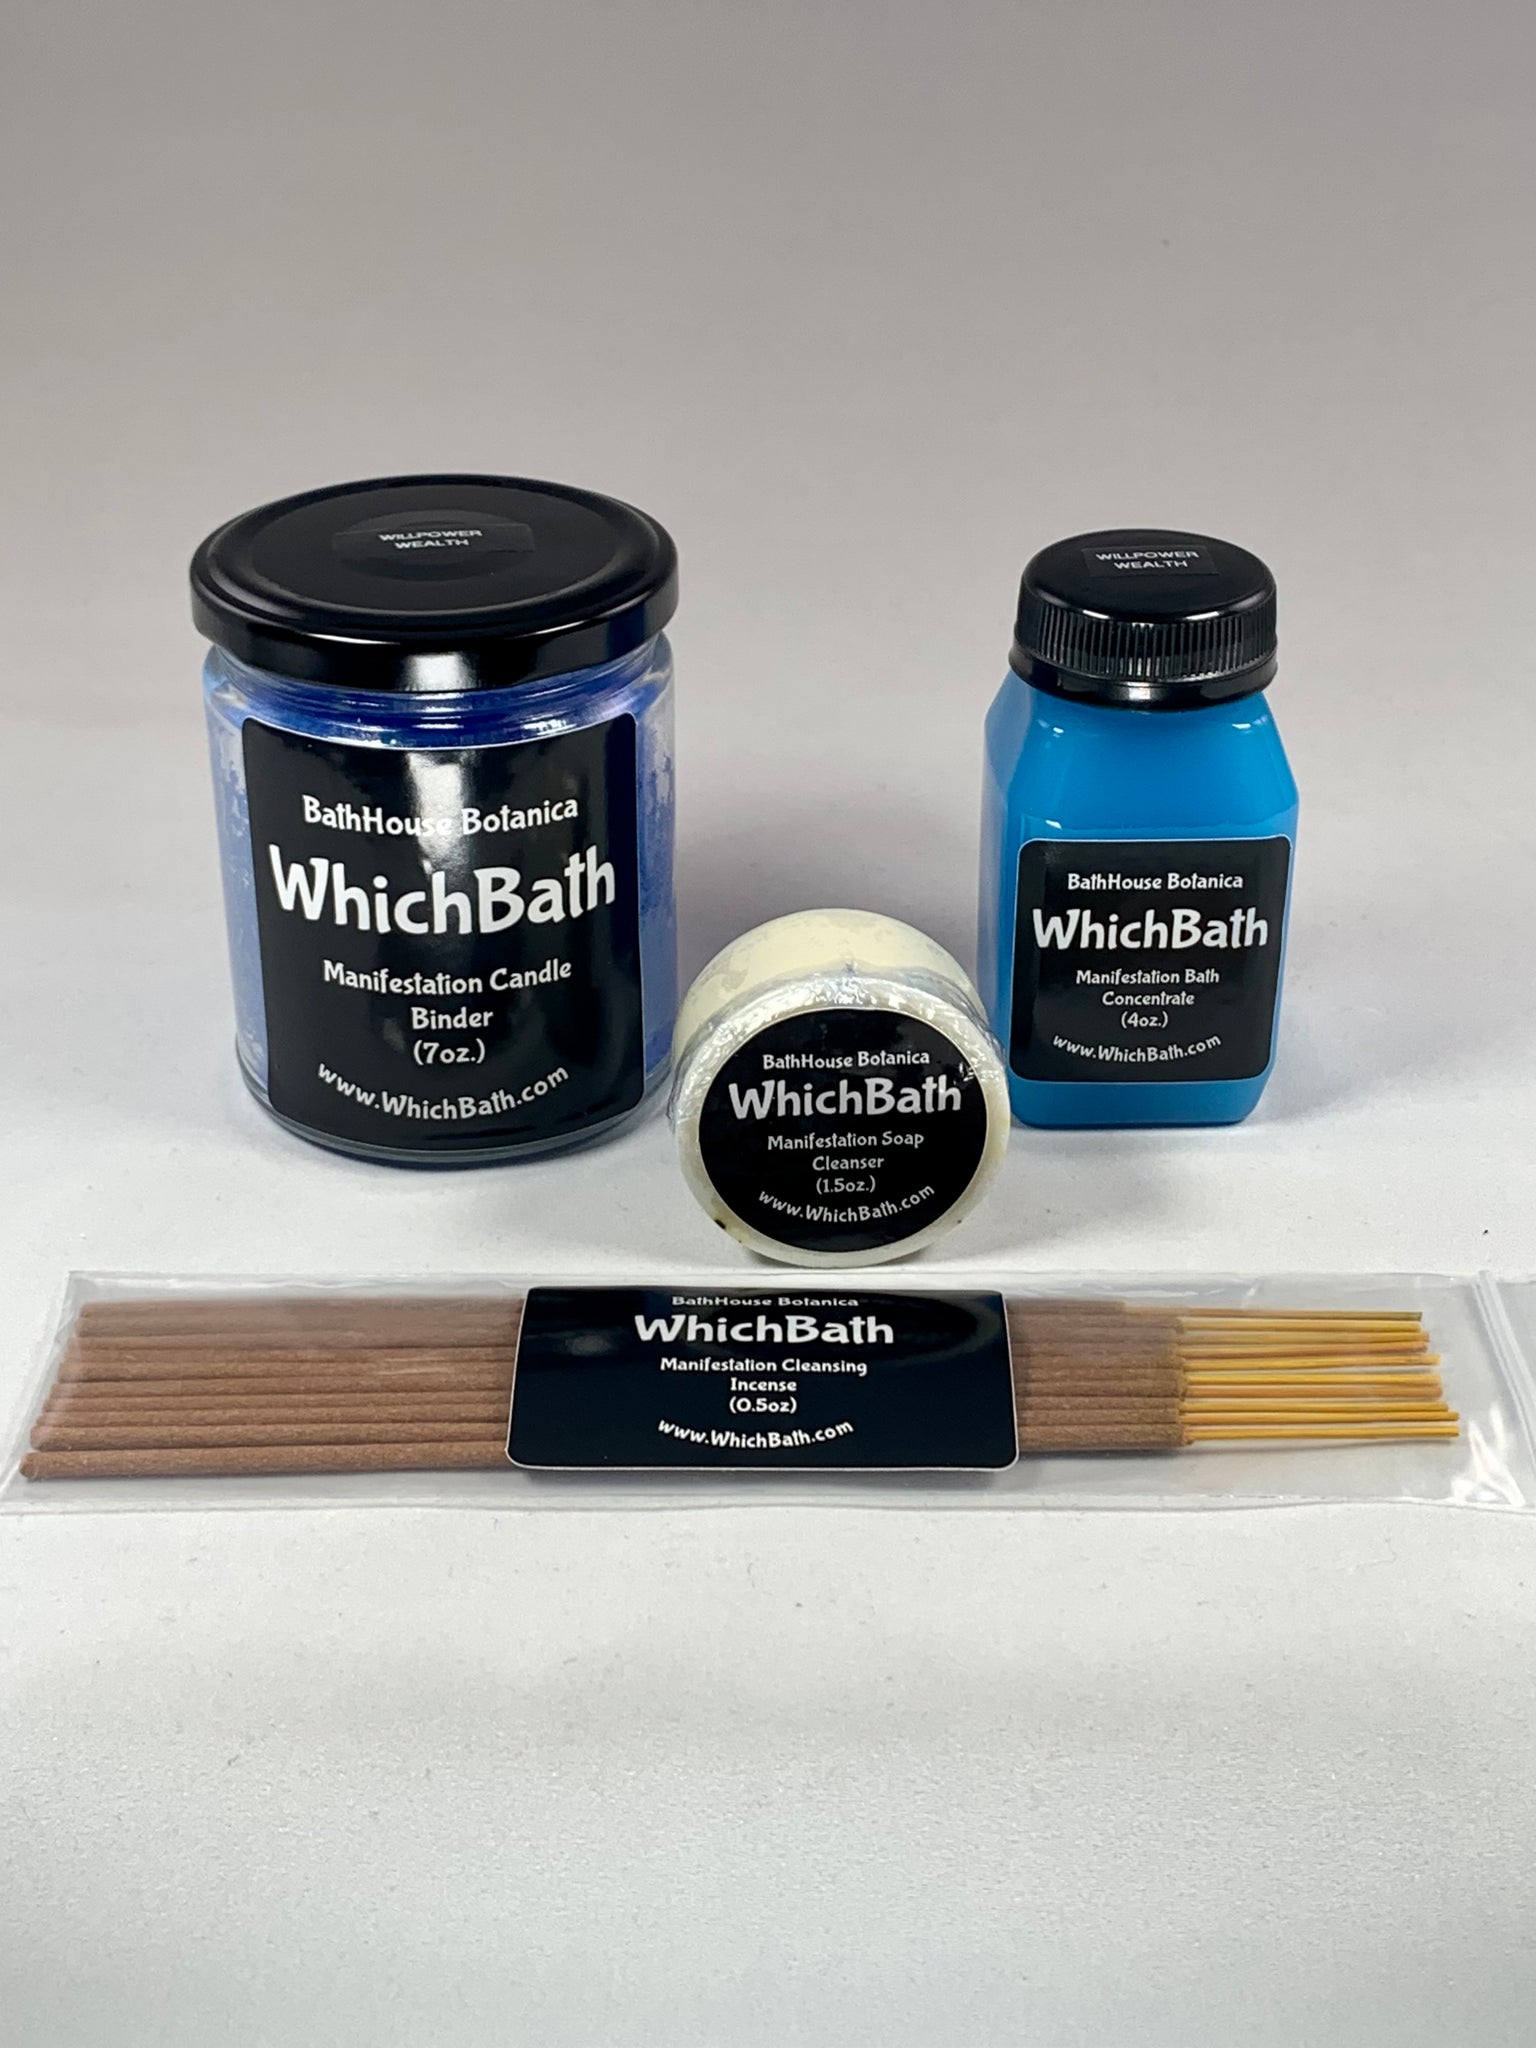 WITCHBATH WILLPOWER WEALTH (Blue Binding Bundle)